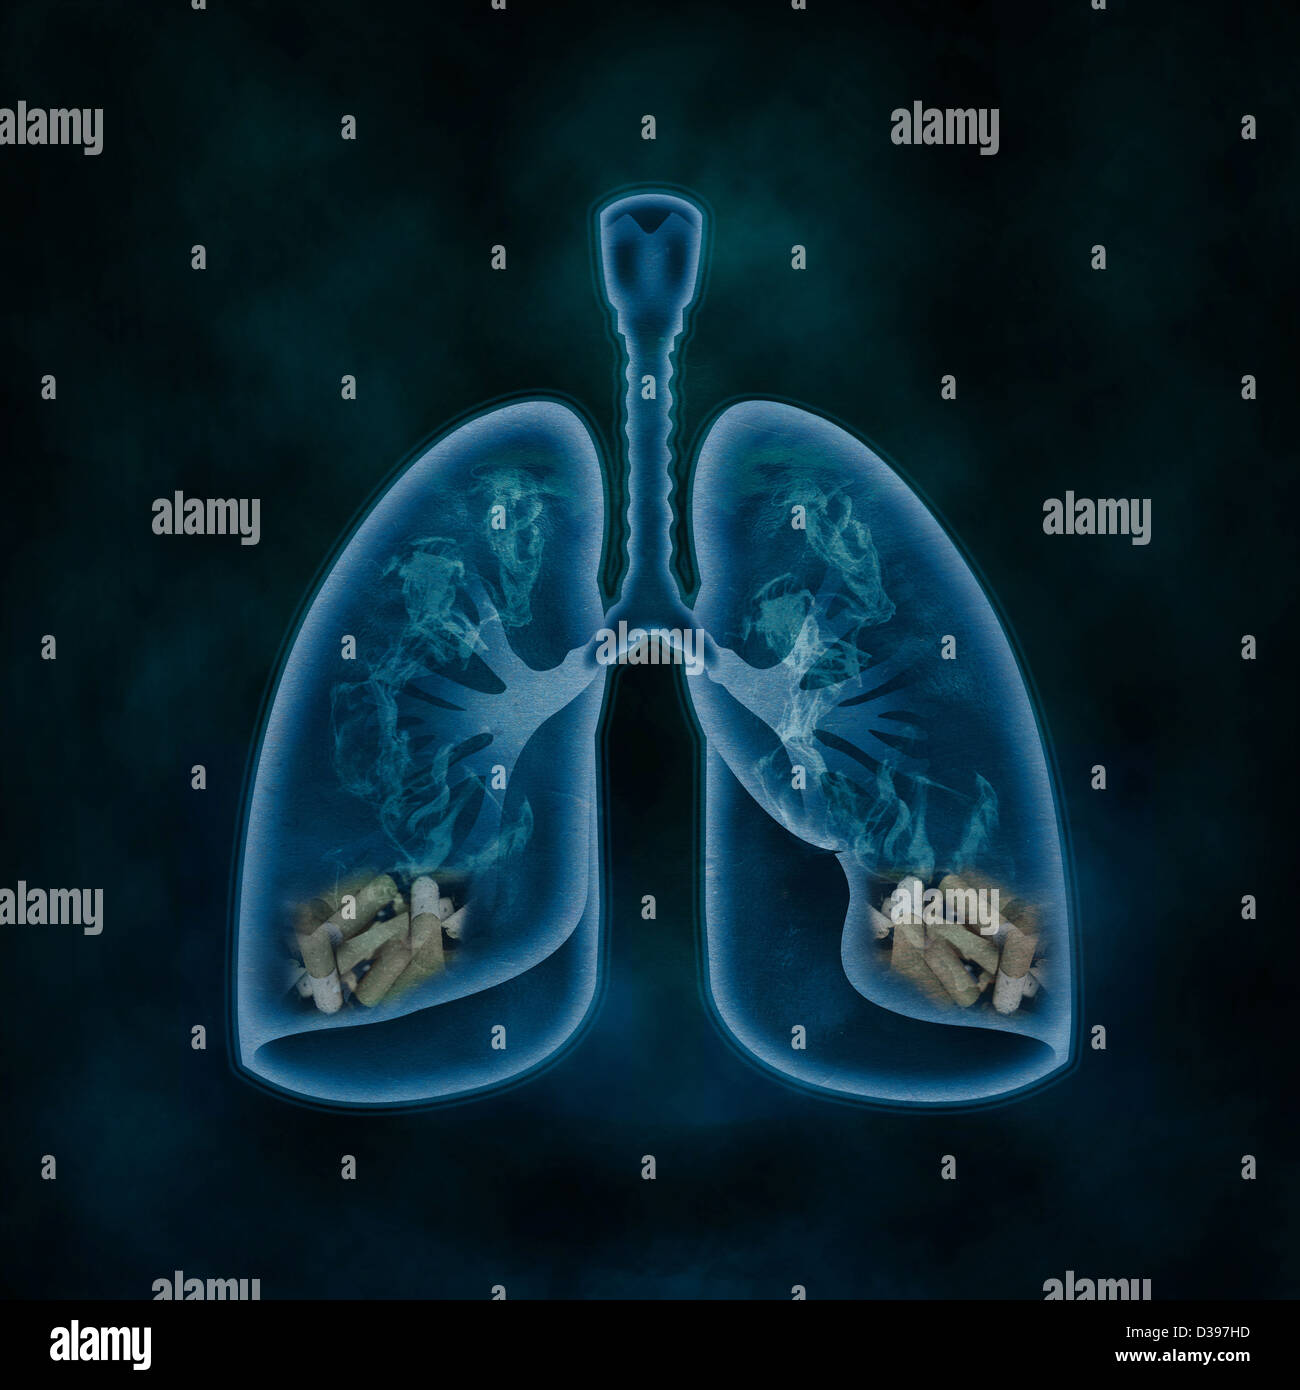 Illustrazione dei polmoni riempiti con le sigarette che rappresentano il concetto di problemi di fumo Foto Stock